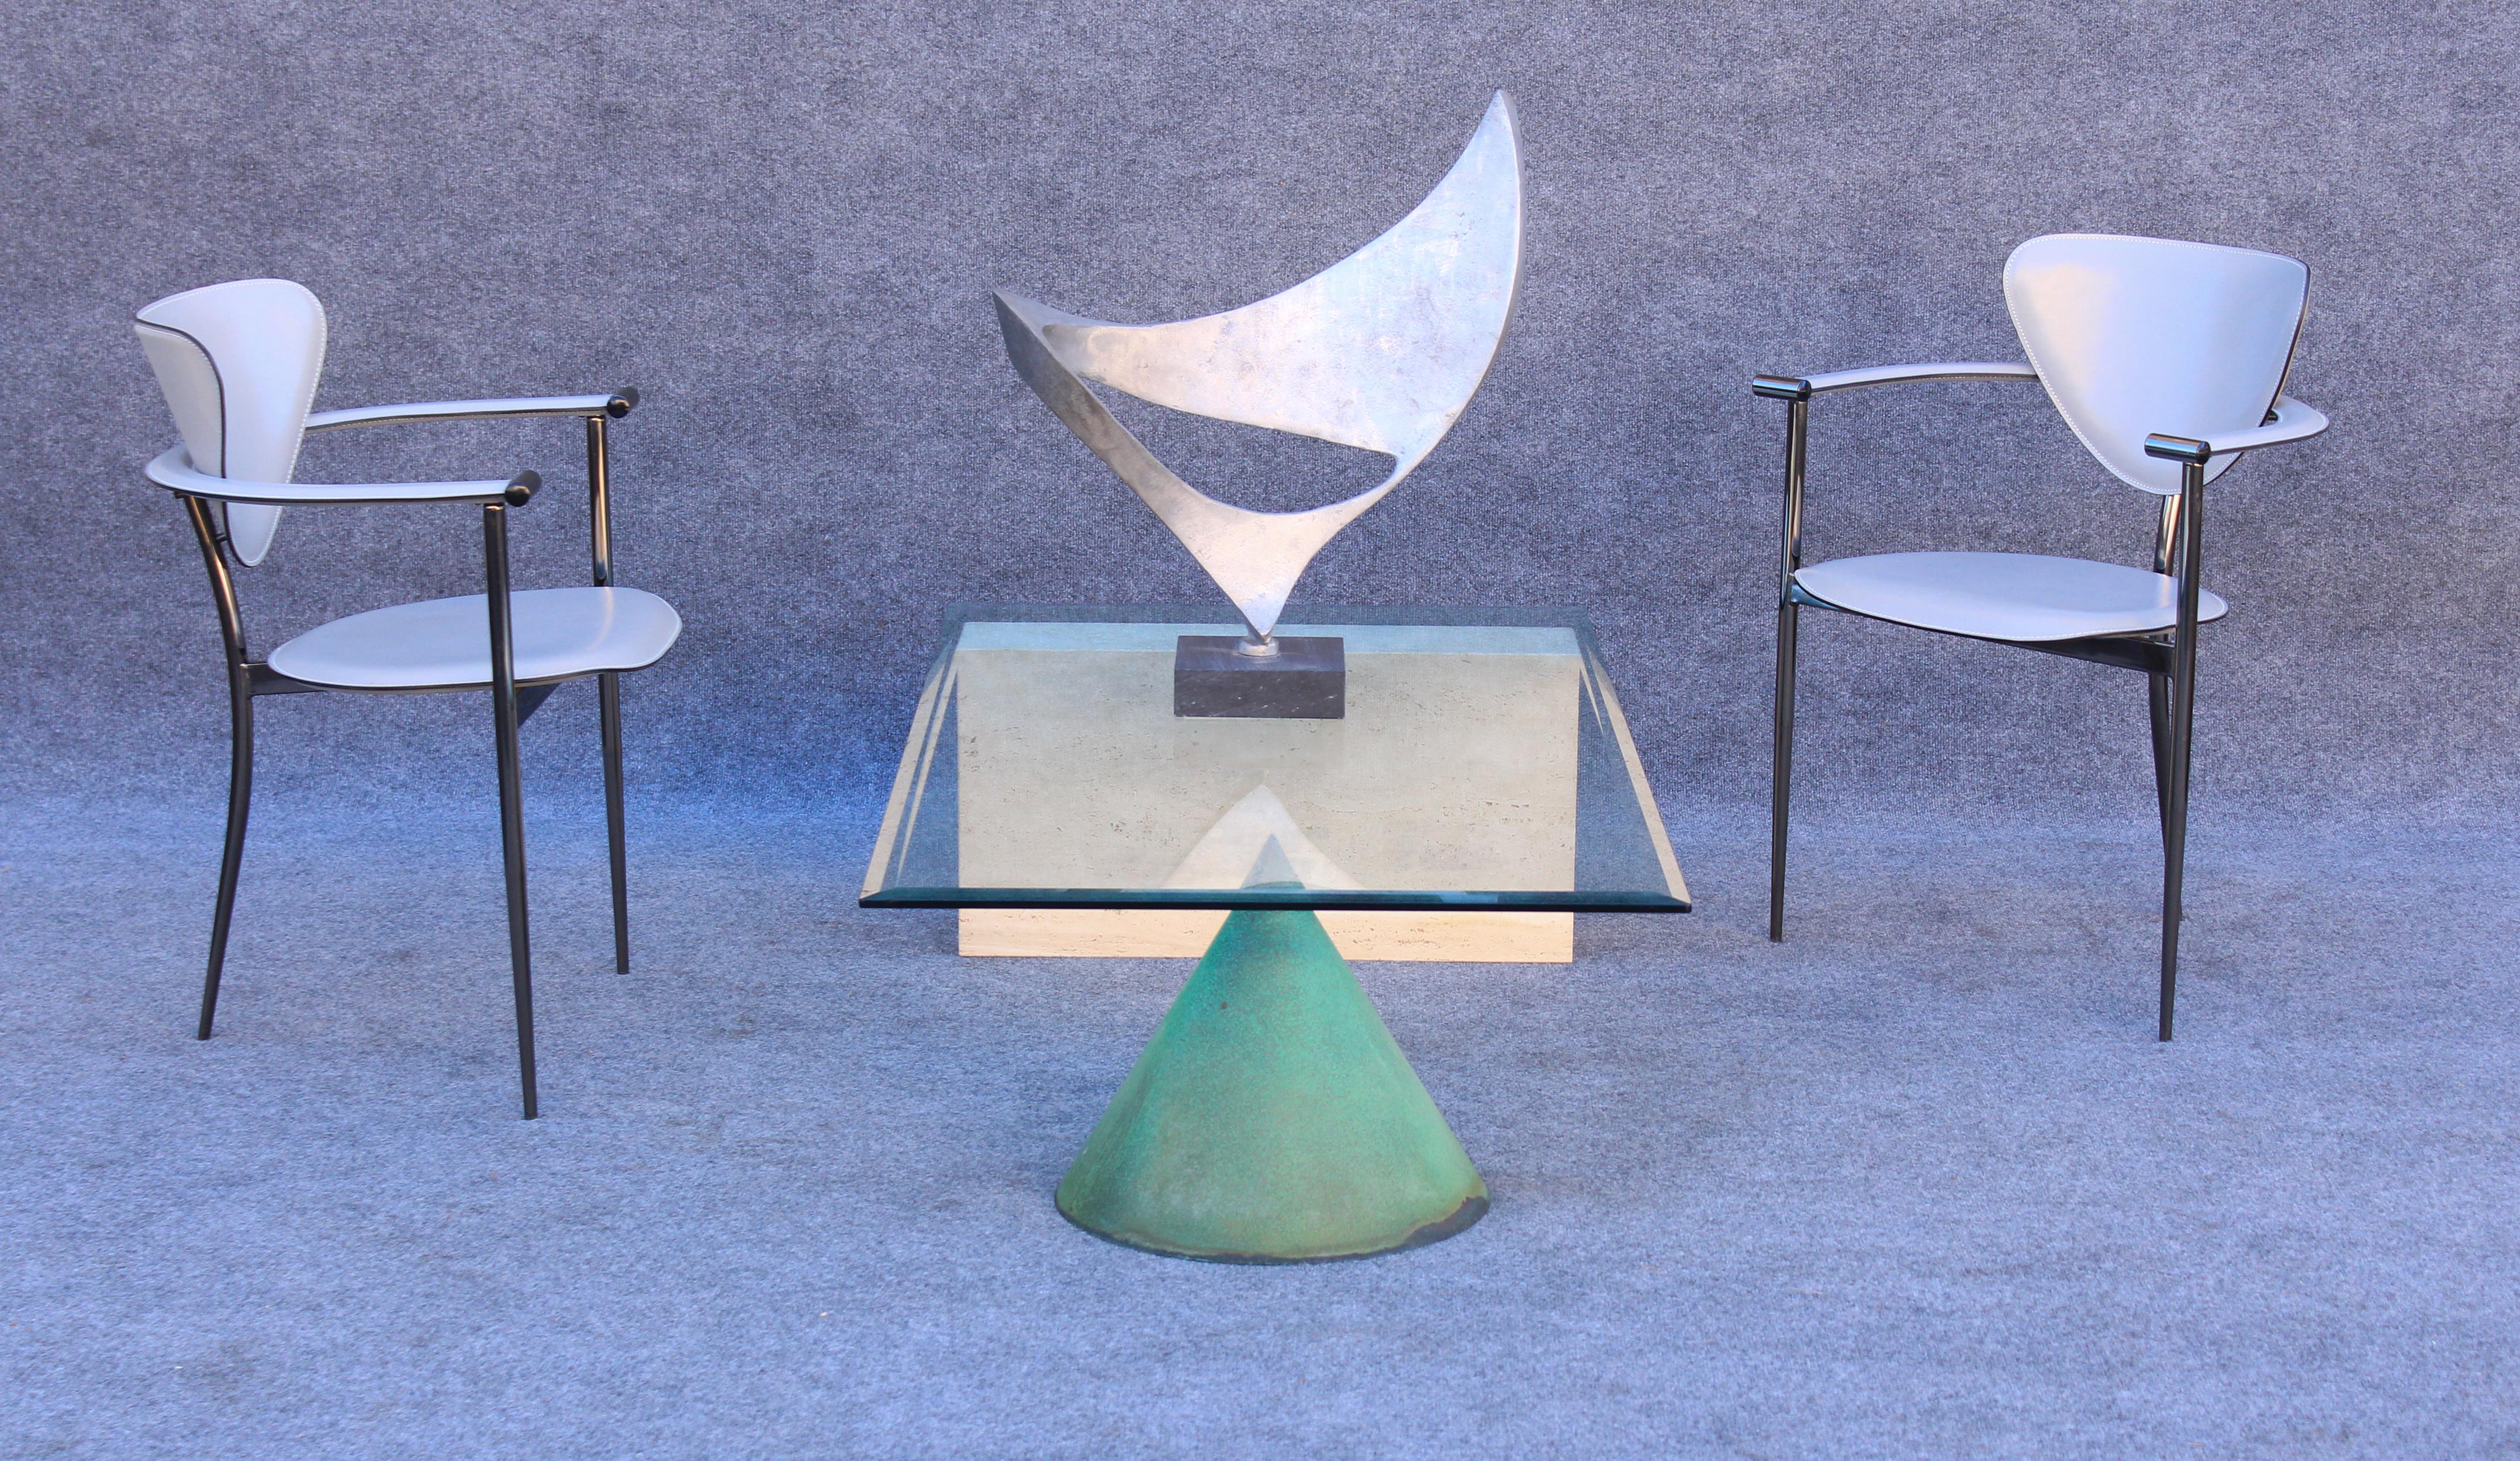 Conçue par les architectes italiens Massimo & Lella Vignelli, cette table a été fabriquée dans les années 1970 par Casigliani. Il existe différentes versions de cette table, mais ce modèle particulier s'appelle le 